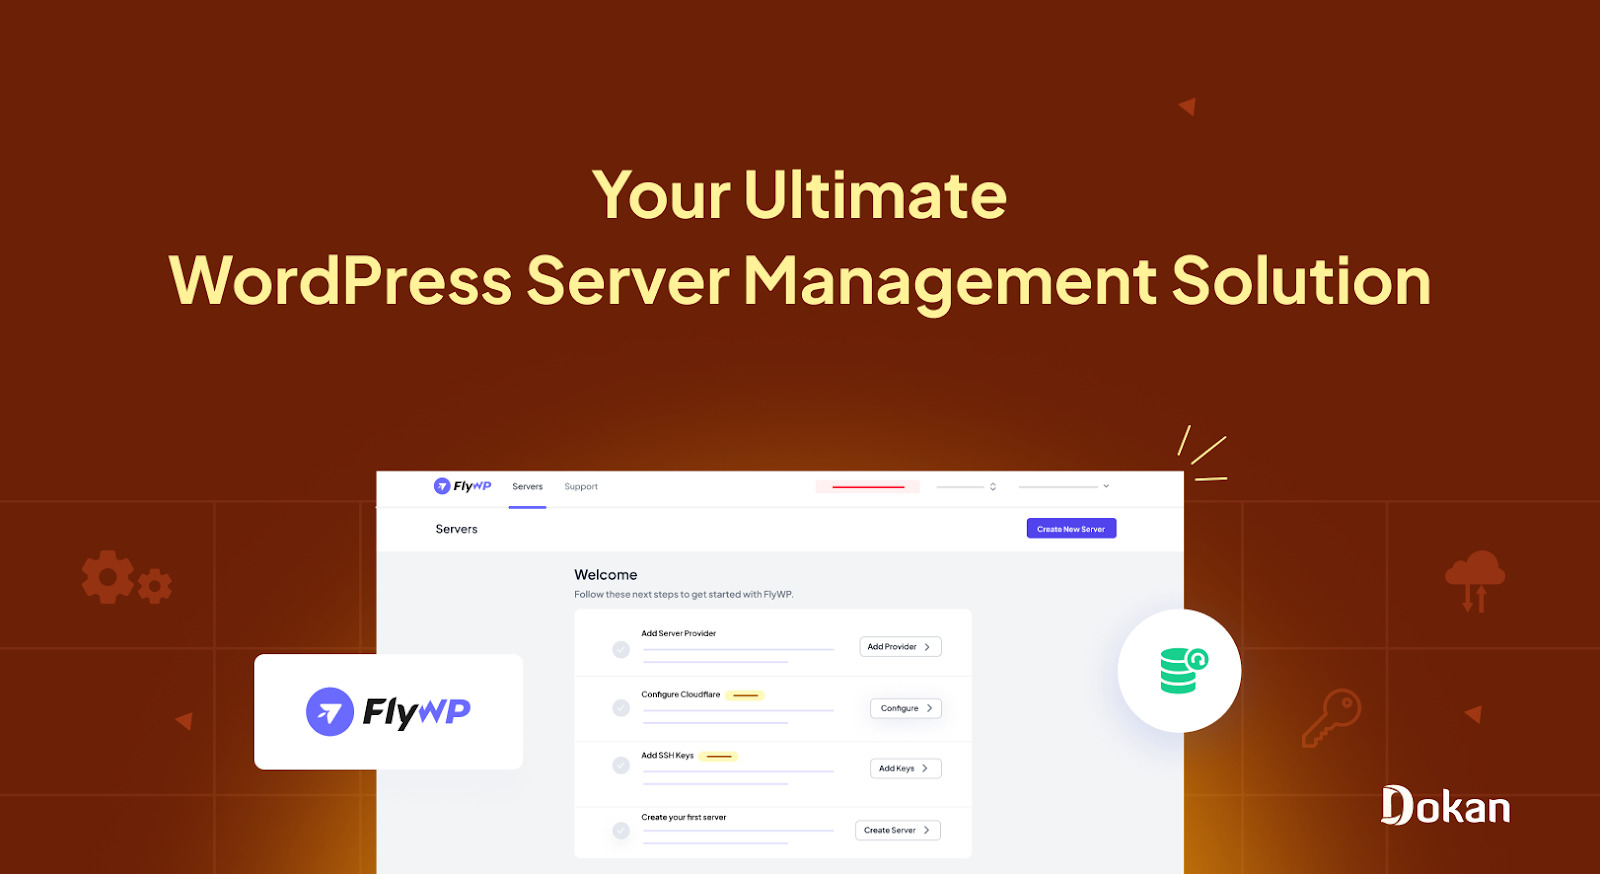 Presentamos FlyWP: su puerta de entrada definitiva a la solución de servidor WordPress